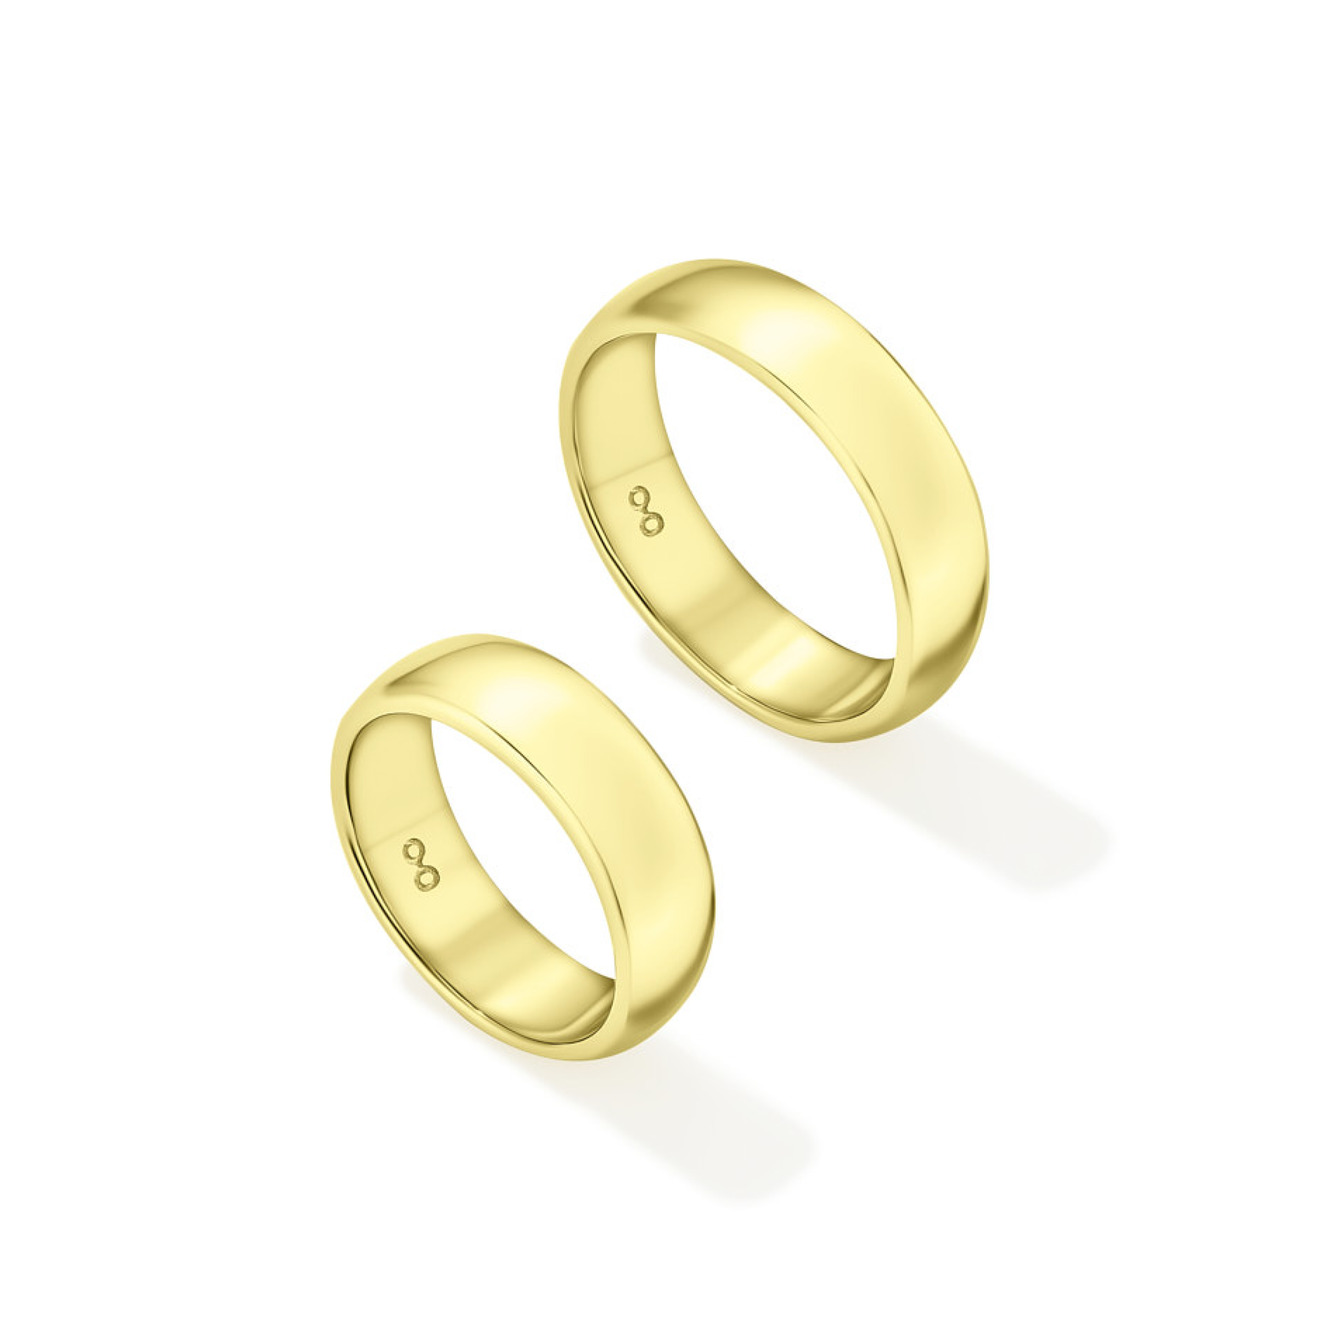 Avgvst Фламандское среднее кольцо из лимонного золота avgvst фламандское среднее кольцо из белого золота